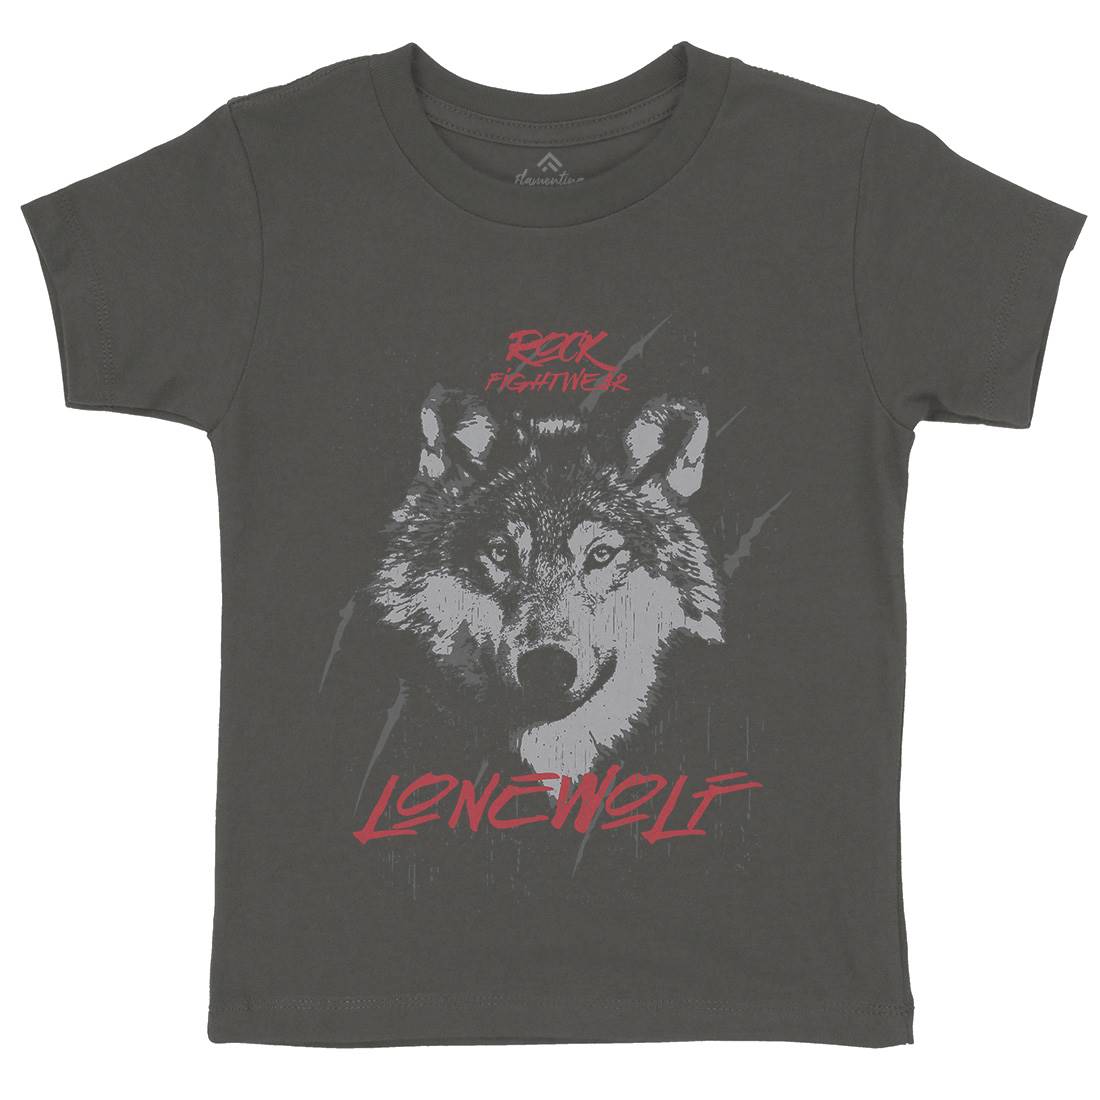 Wolf Fightwear Kids Crew Neck T-Shirt Animals B776